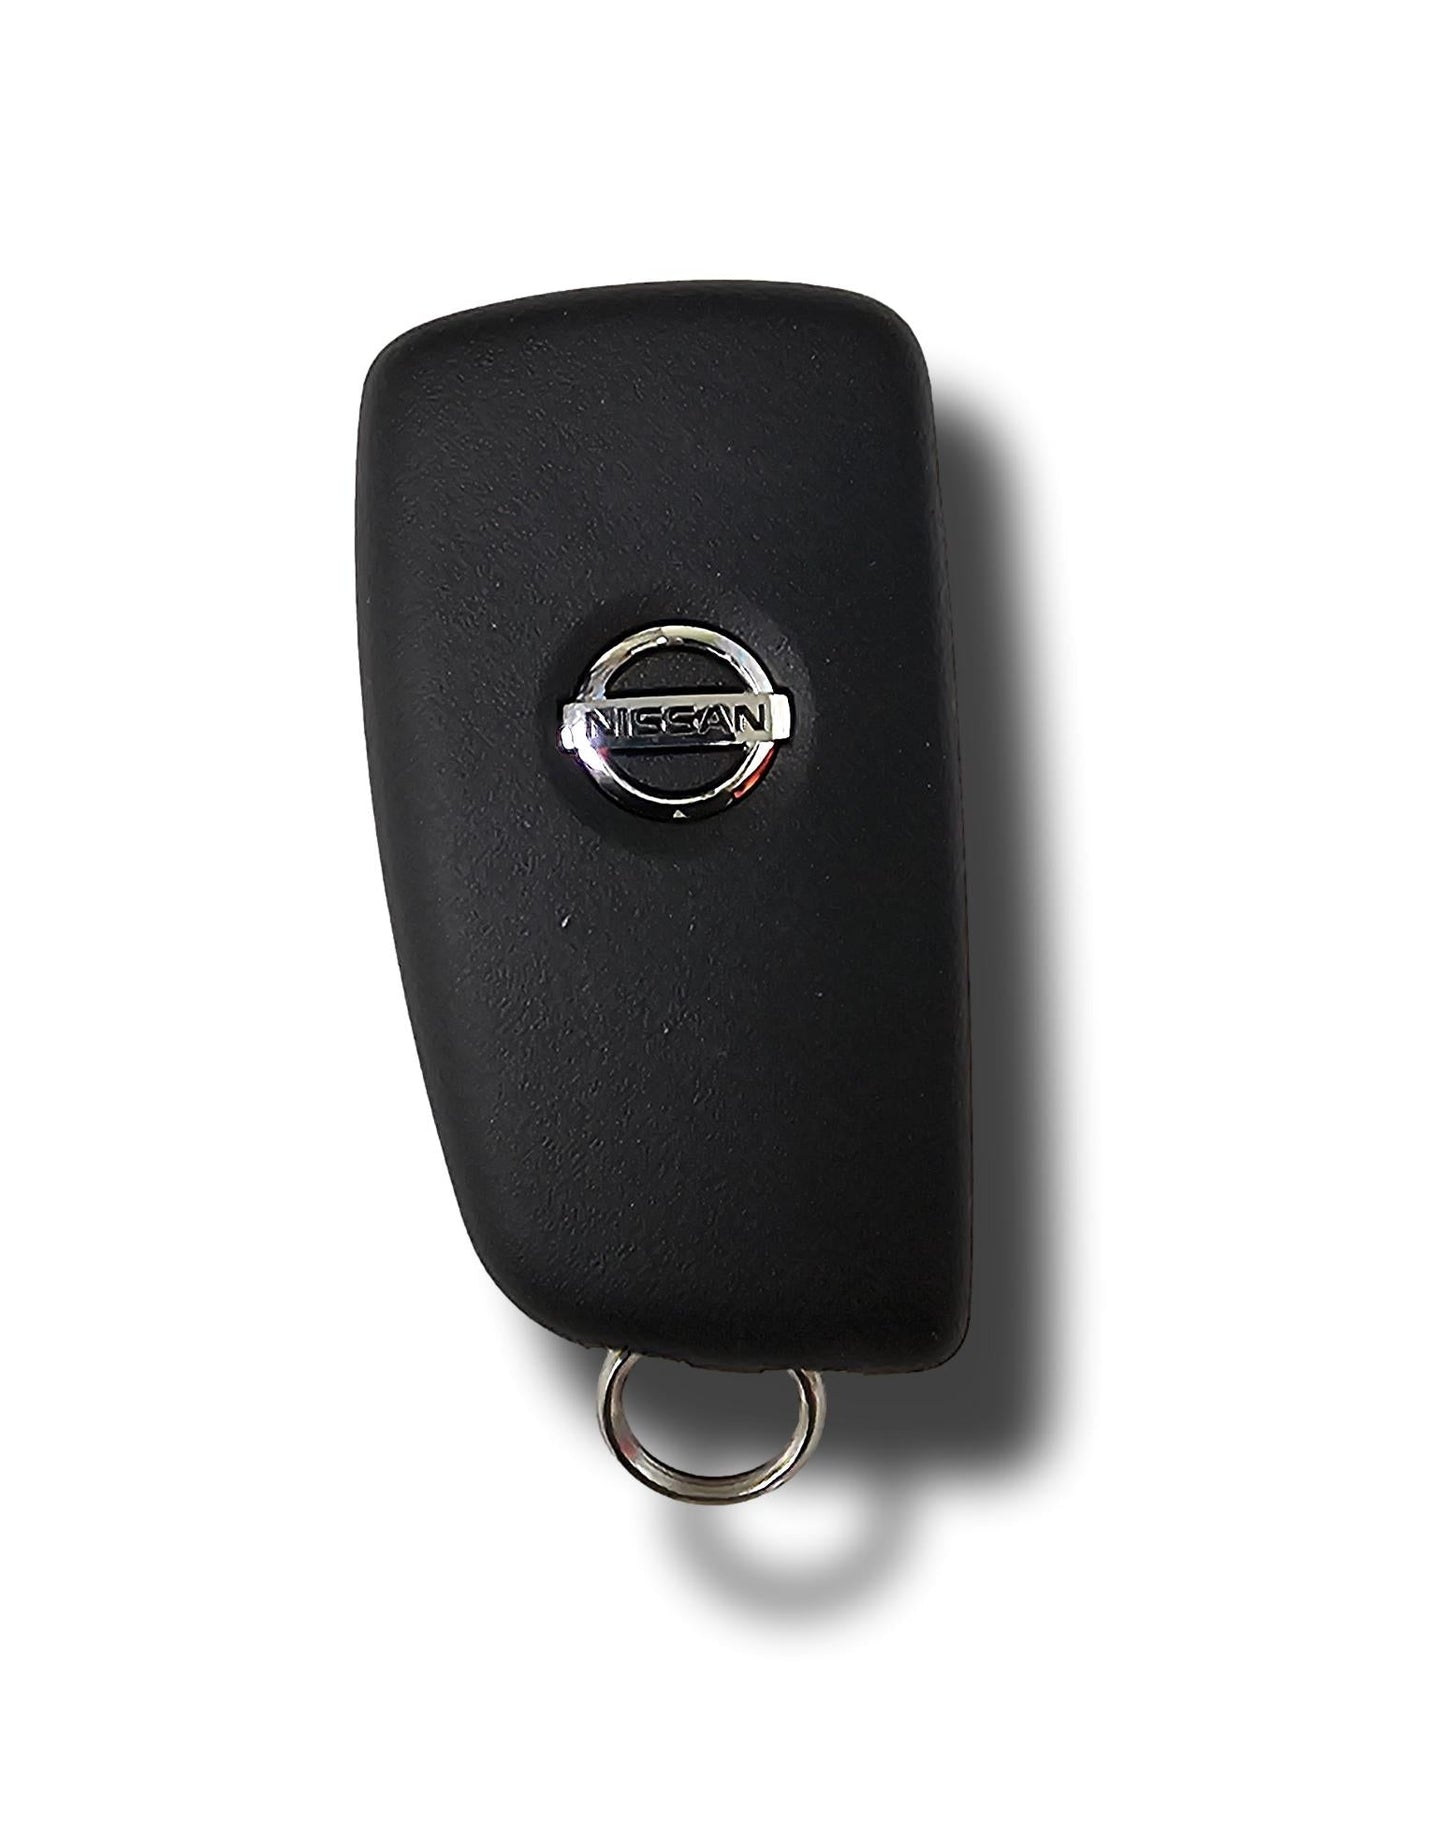 Echte neue Nissan Qashqai Remote Key 2 Button Blank 2013-21 (17102023)